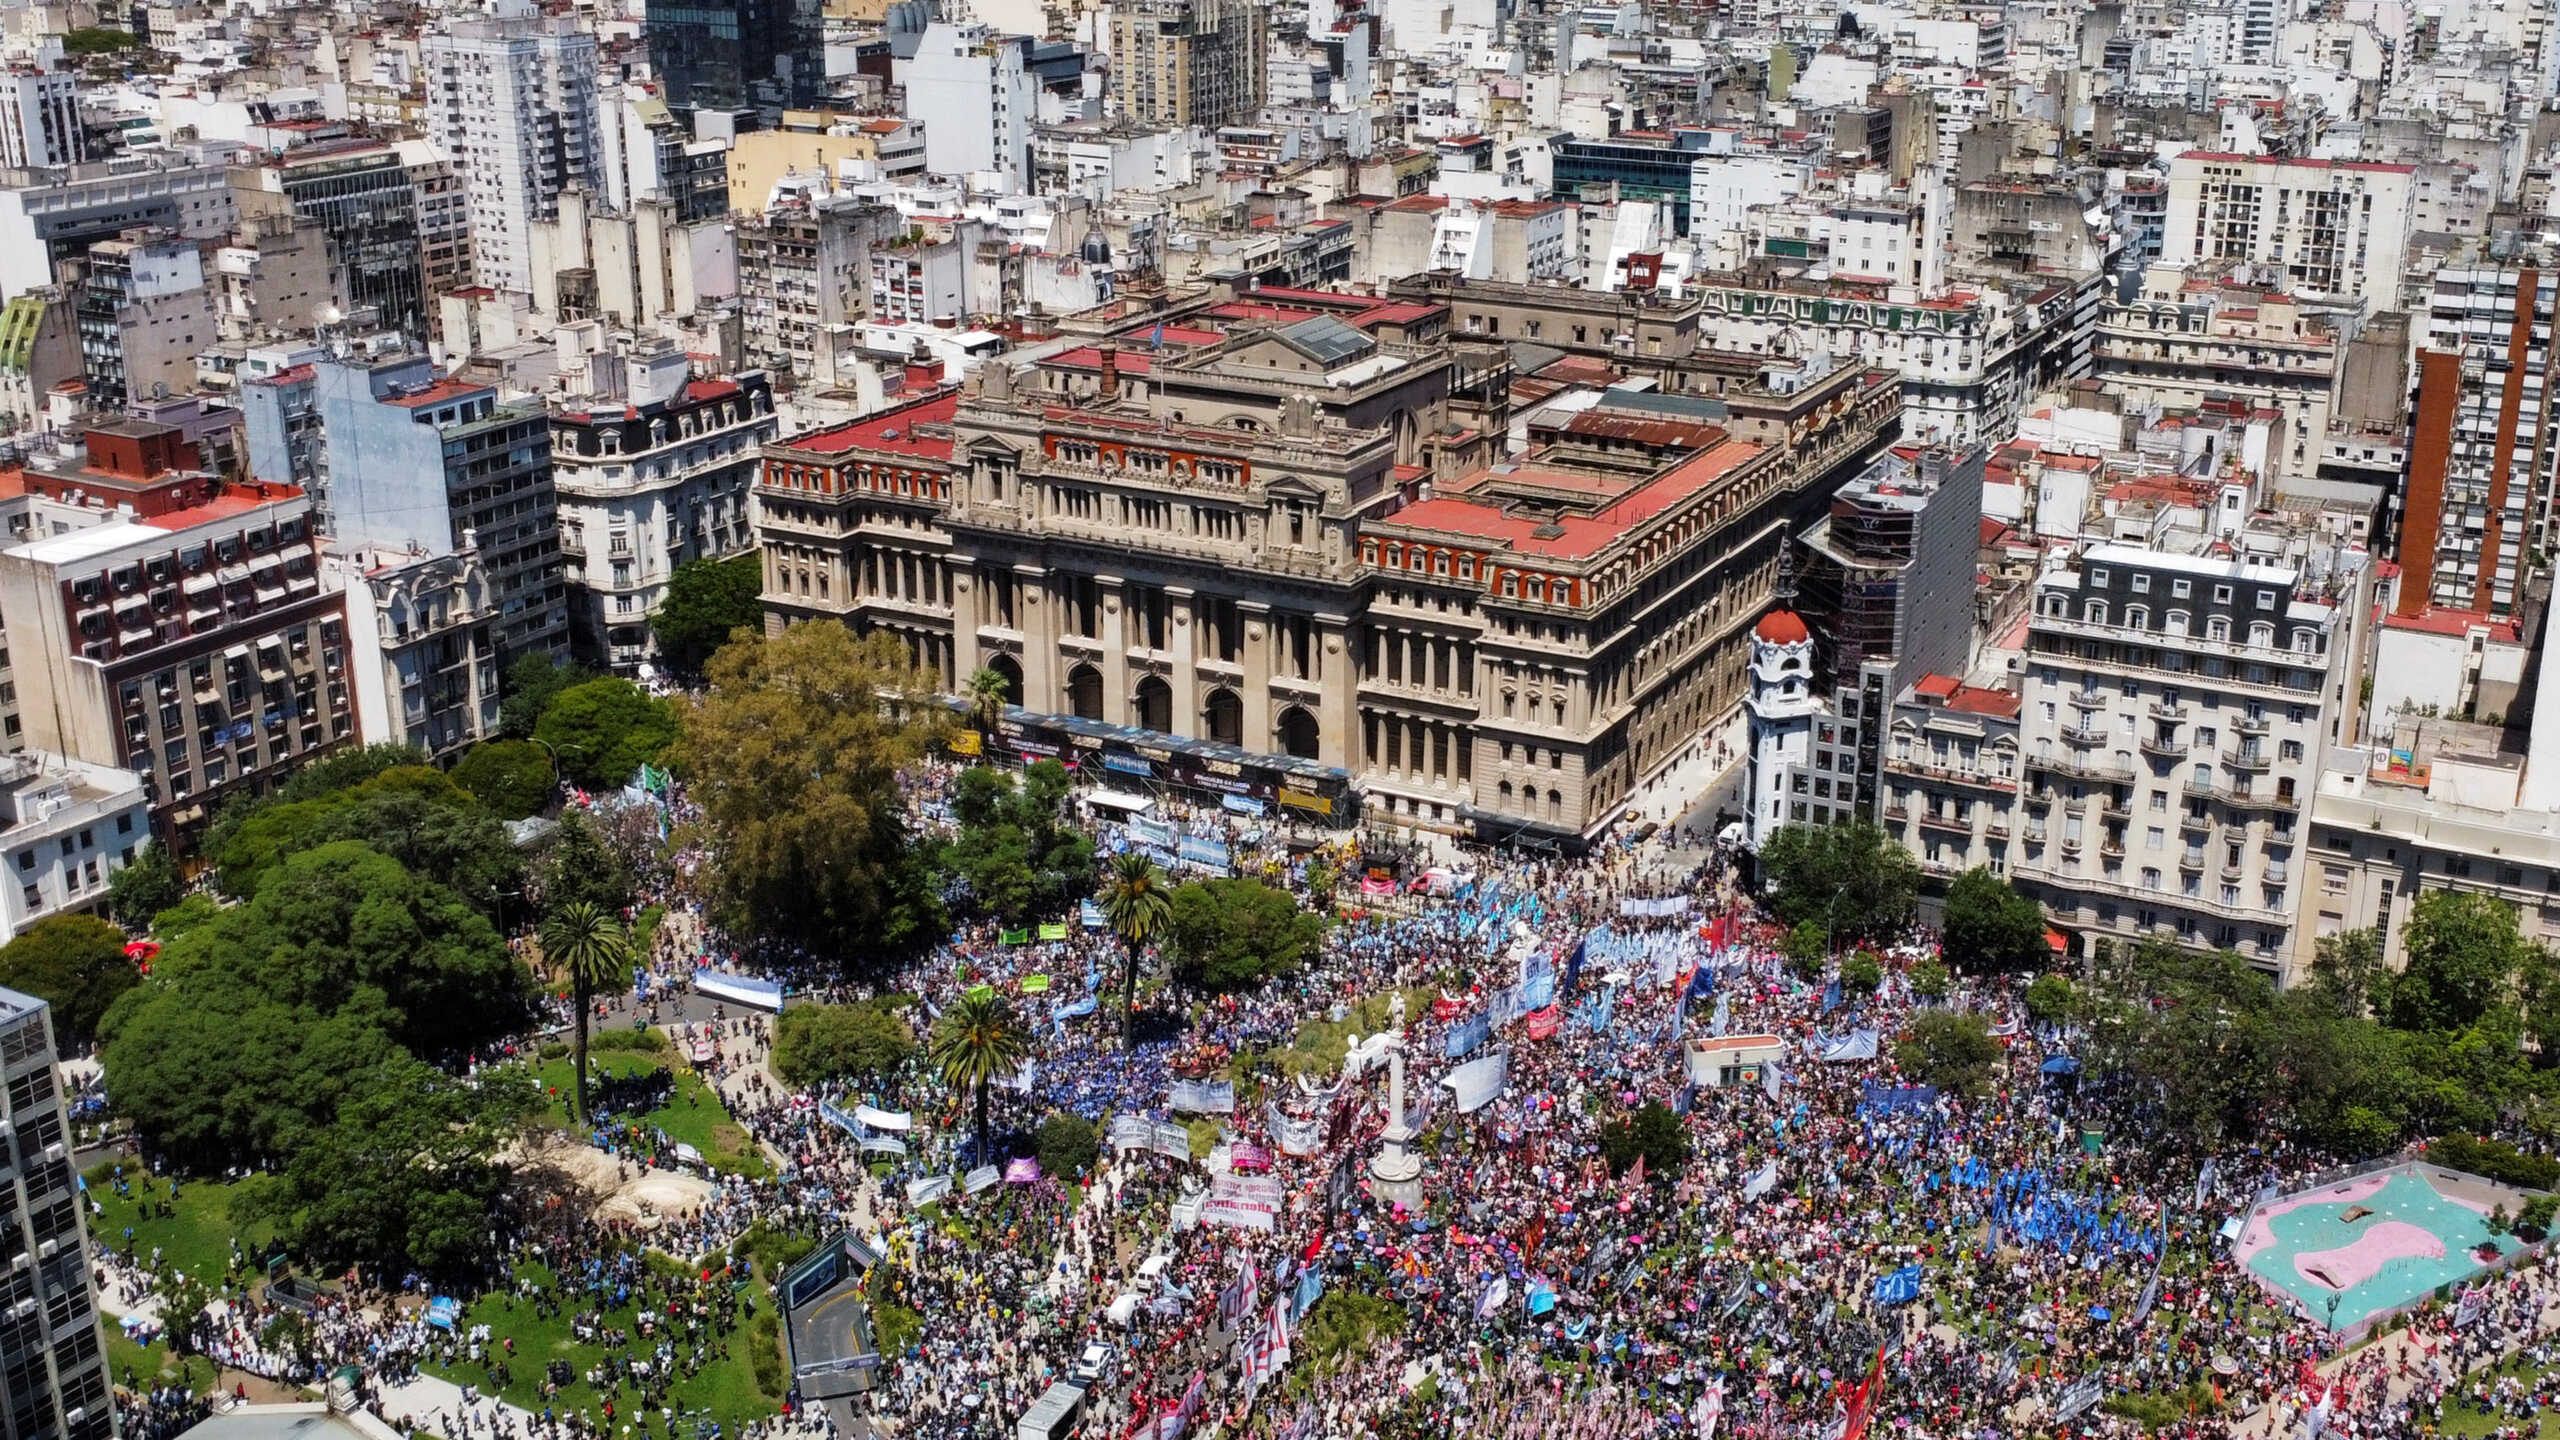 Αργεντινή: Στους δρόμους του Μπουένος Άιρες οι Αργεντινοί για τις «αντισυνταγματικές μεταρρυθμίσεις» του Μιλέι